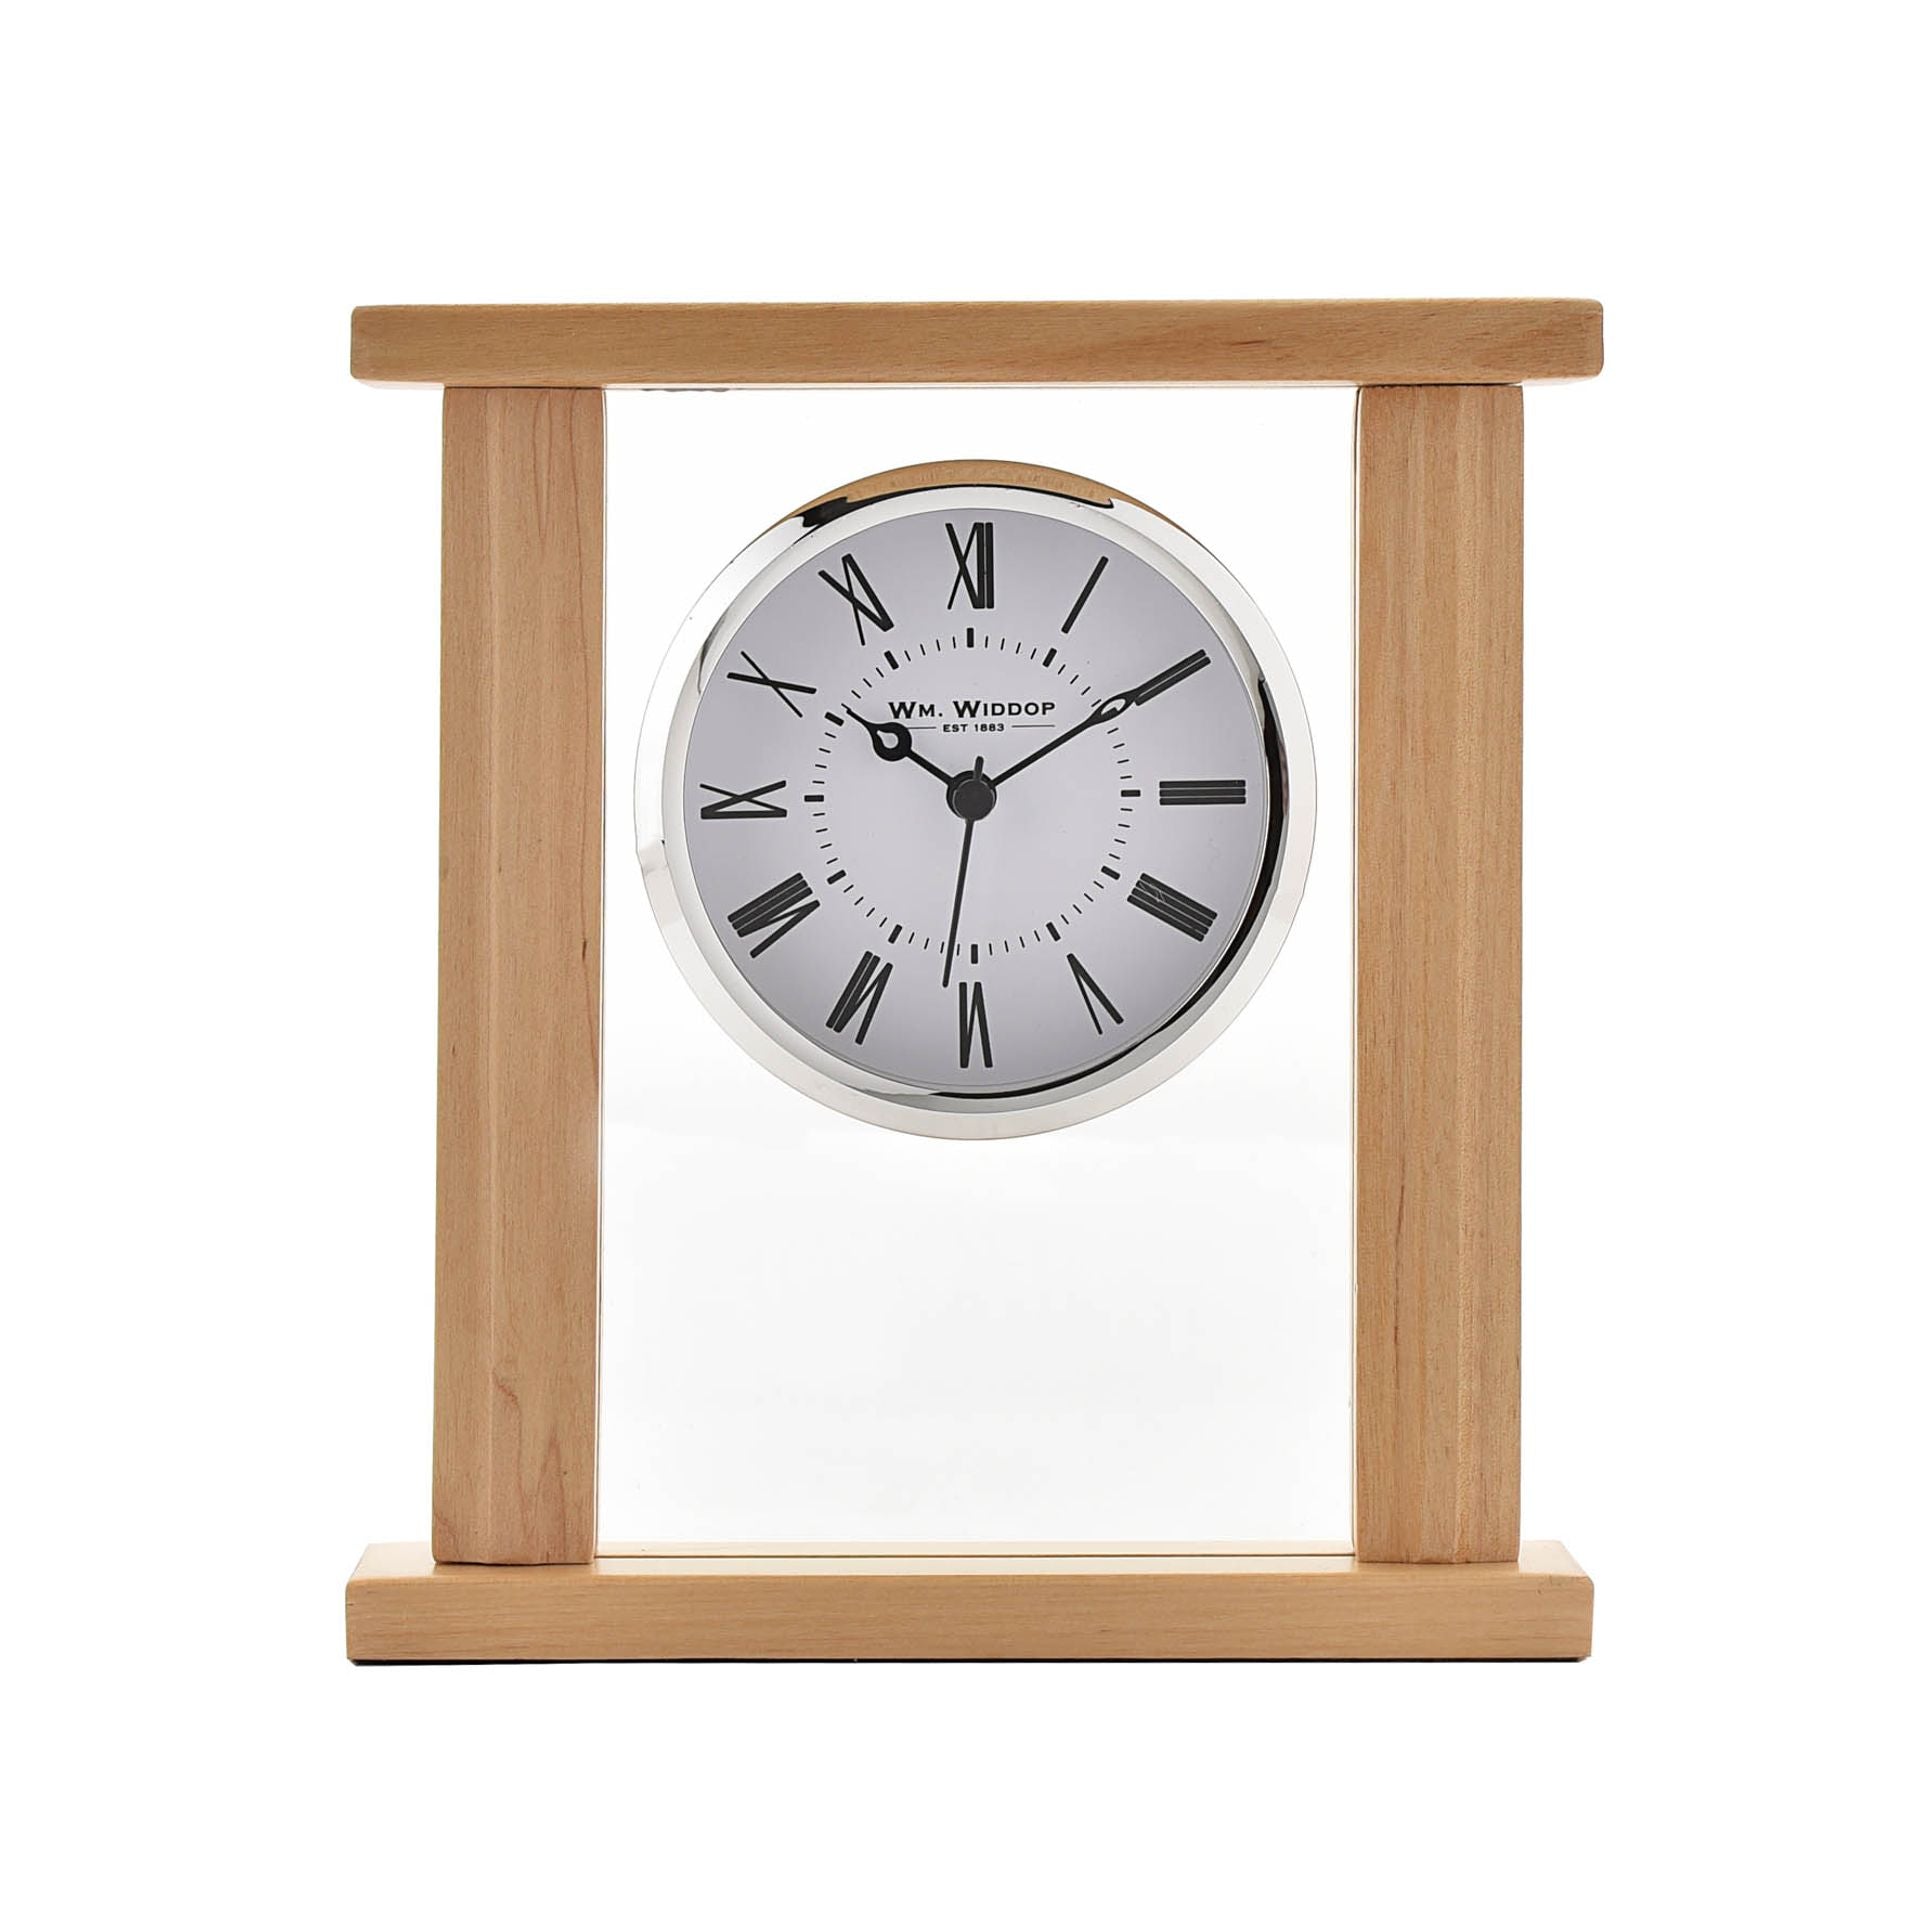 Wm. Widdop Rectangular Glass & Wood Mantel Clock